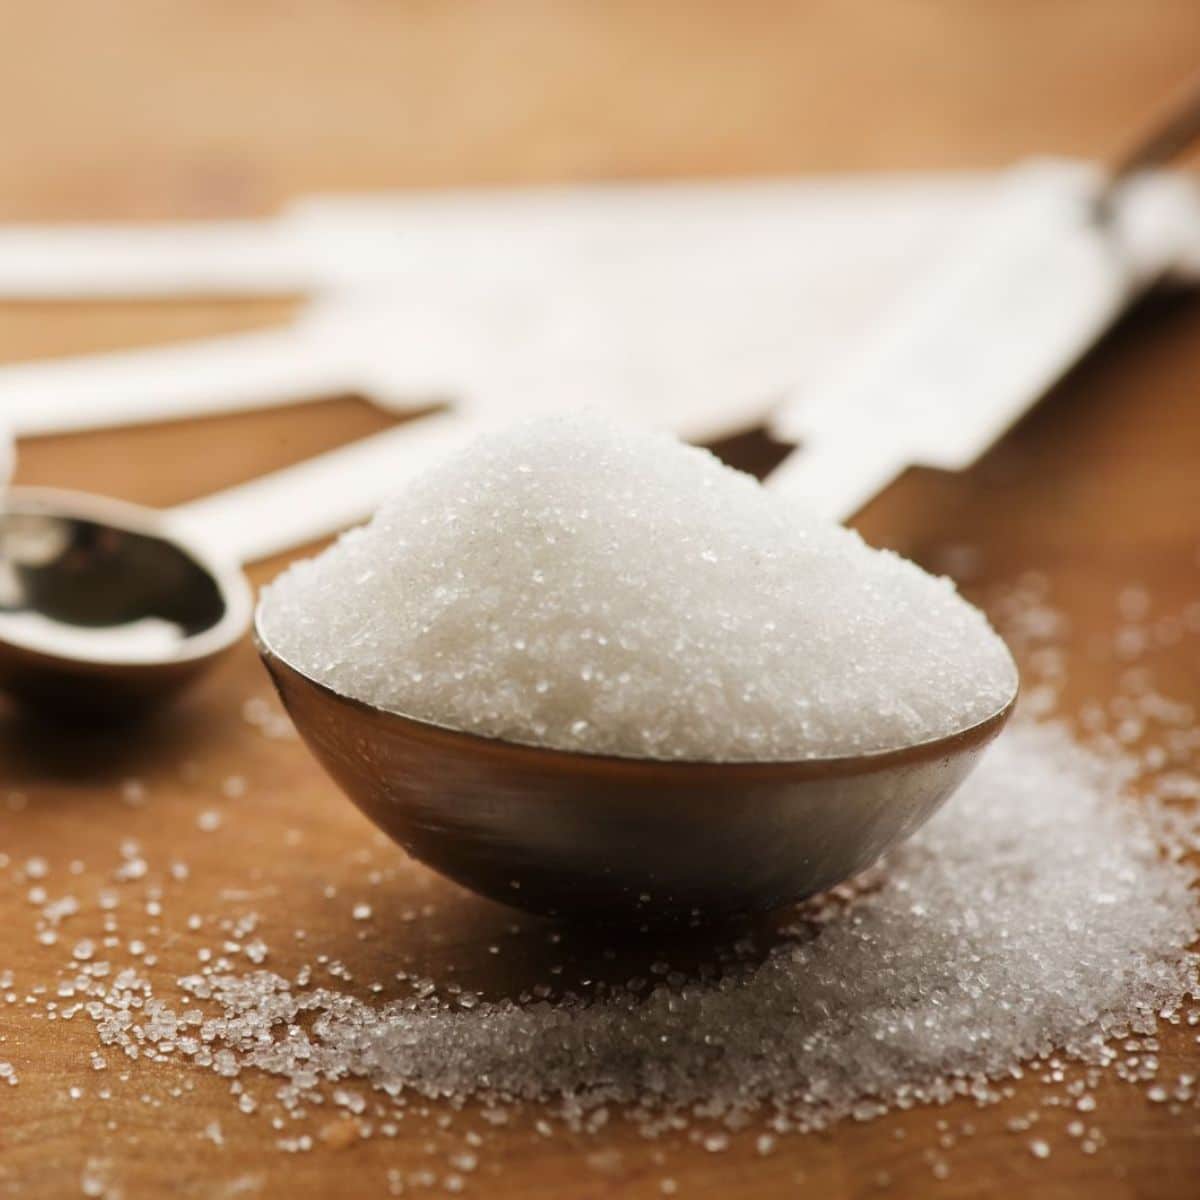 Cara mengubah gram gula menjadi sendok makan dengan mudah saat memanggang.